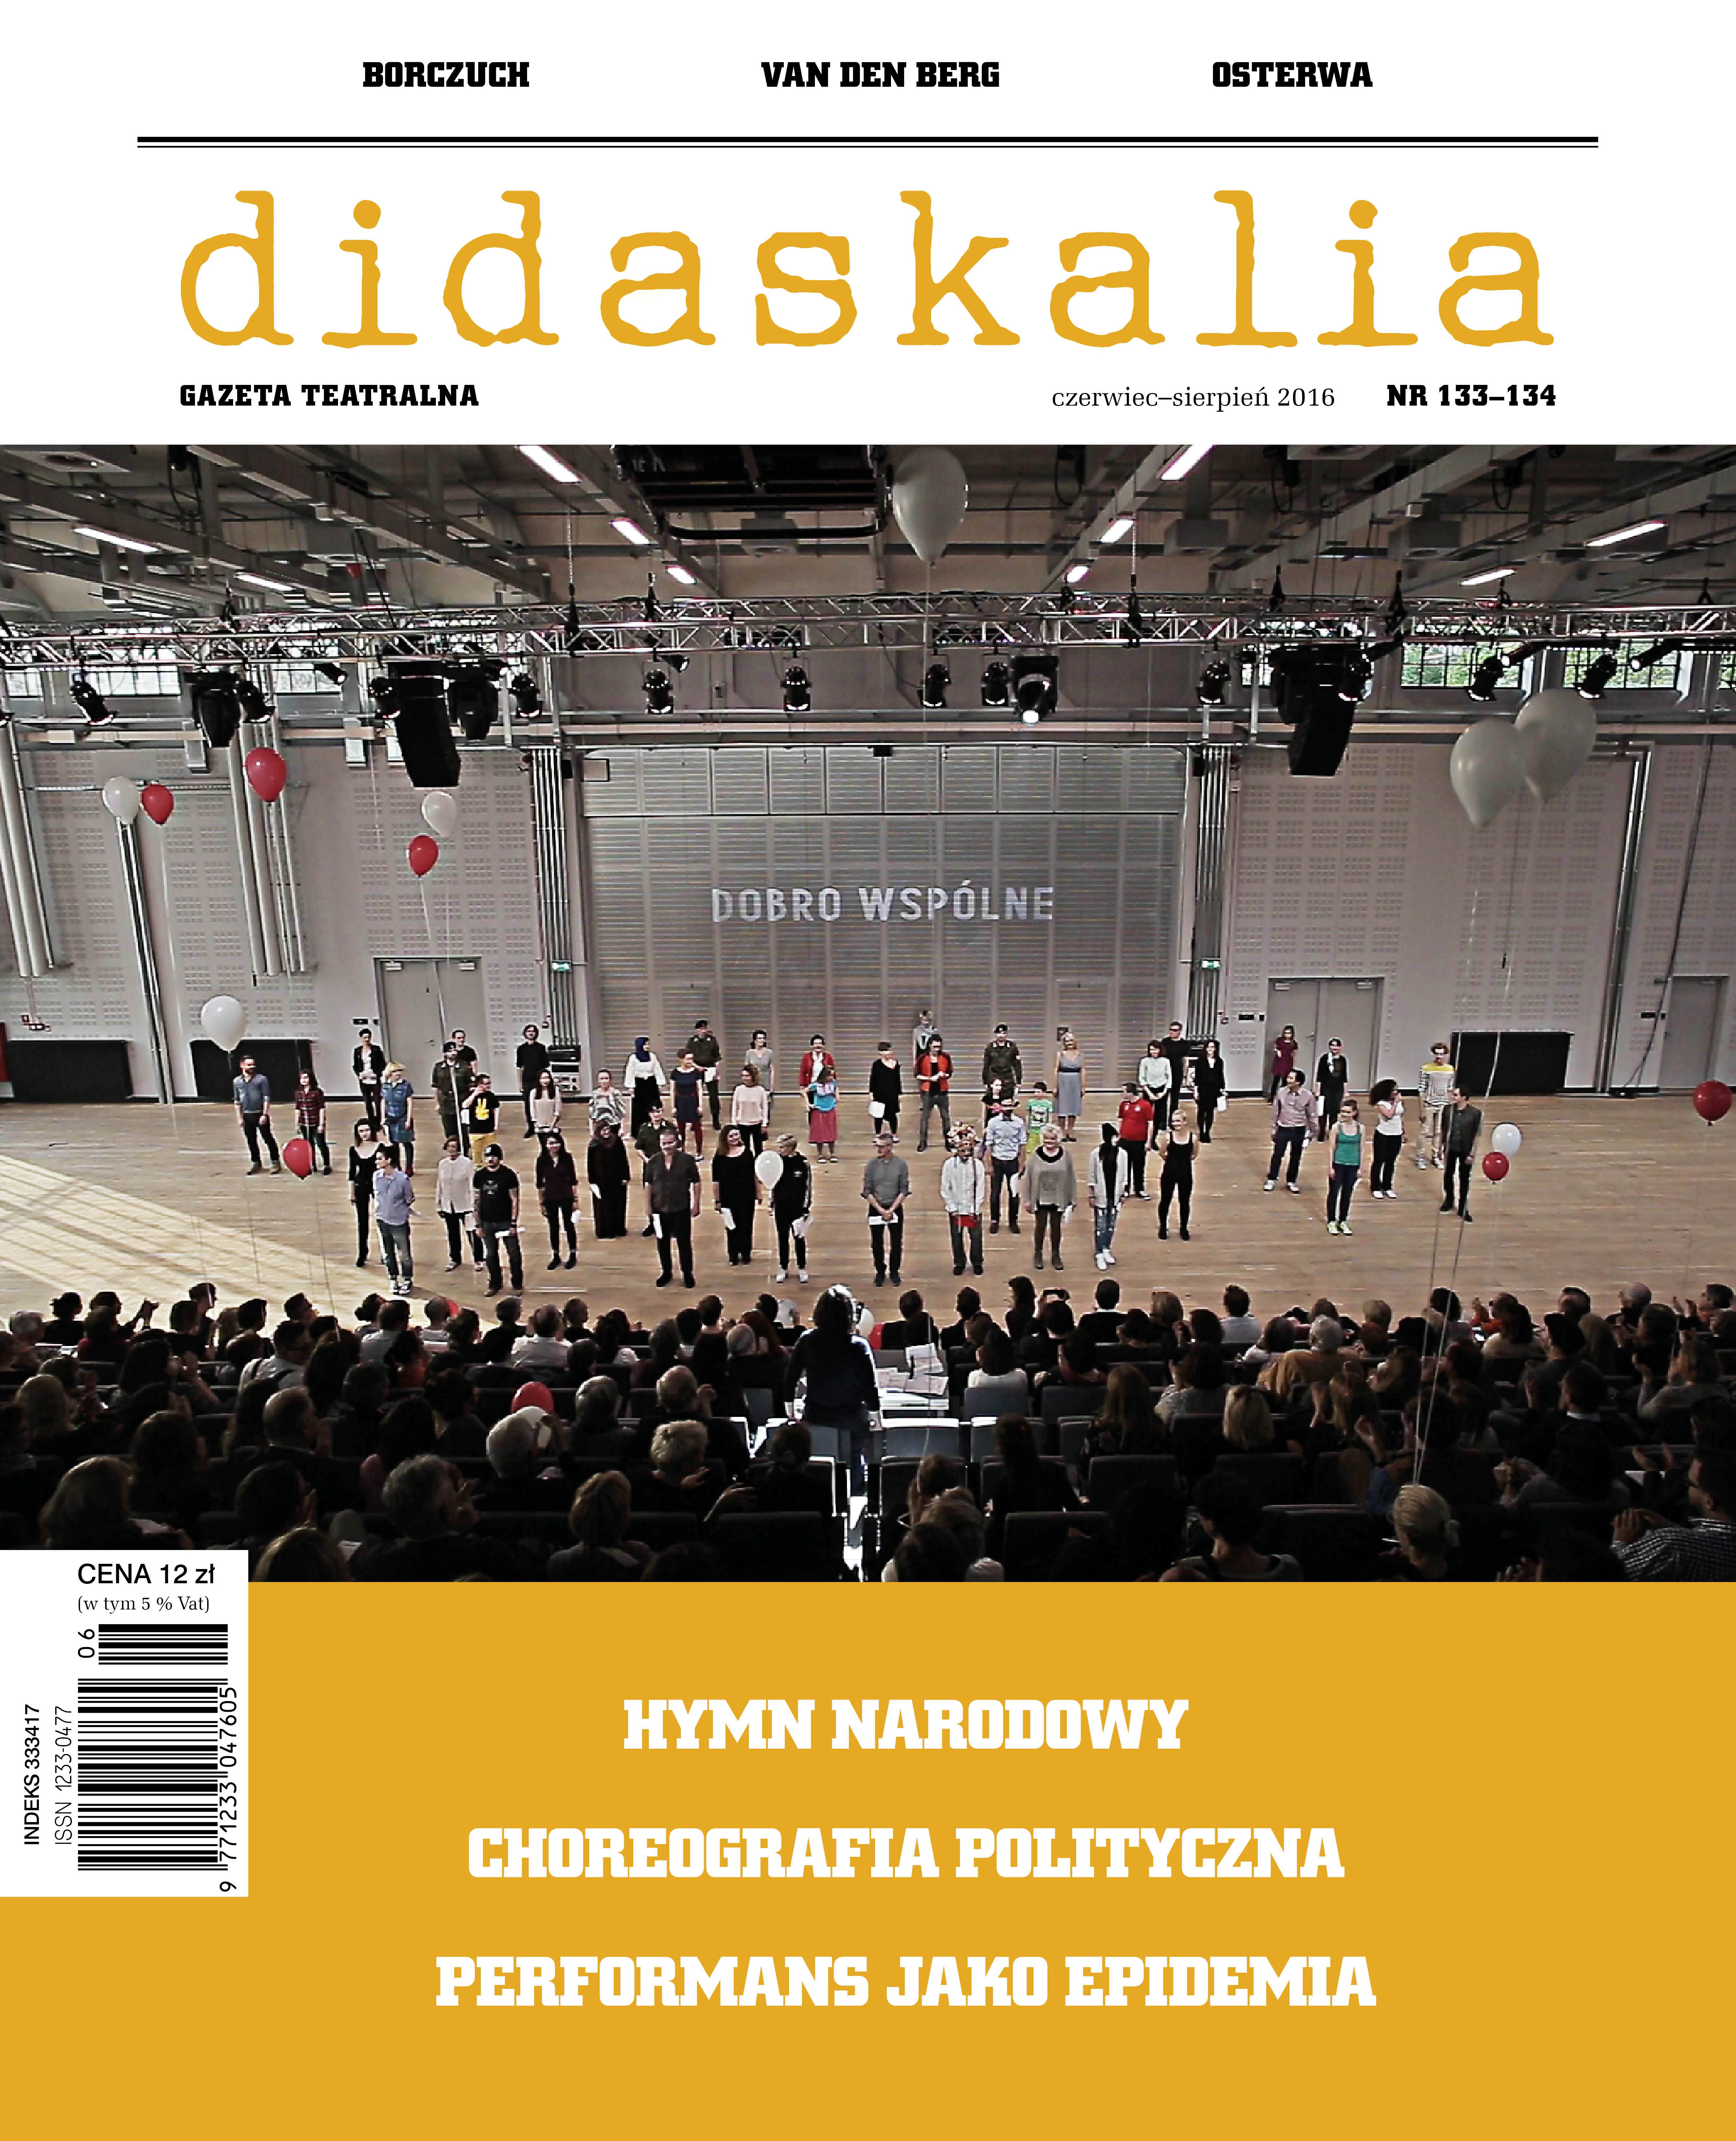 A Poll: Leszek Kolankiewicz, Piotr Morawski, Joanna Wichowska, Szymon Wróblewski, Wojtek Ziemilski Cover Image